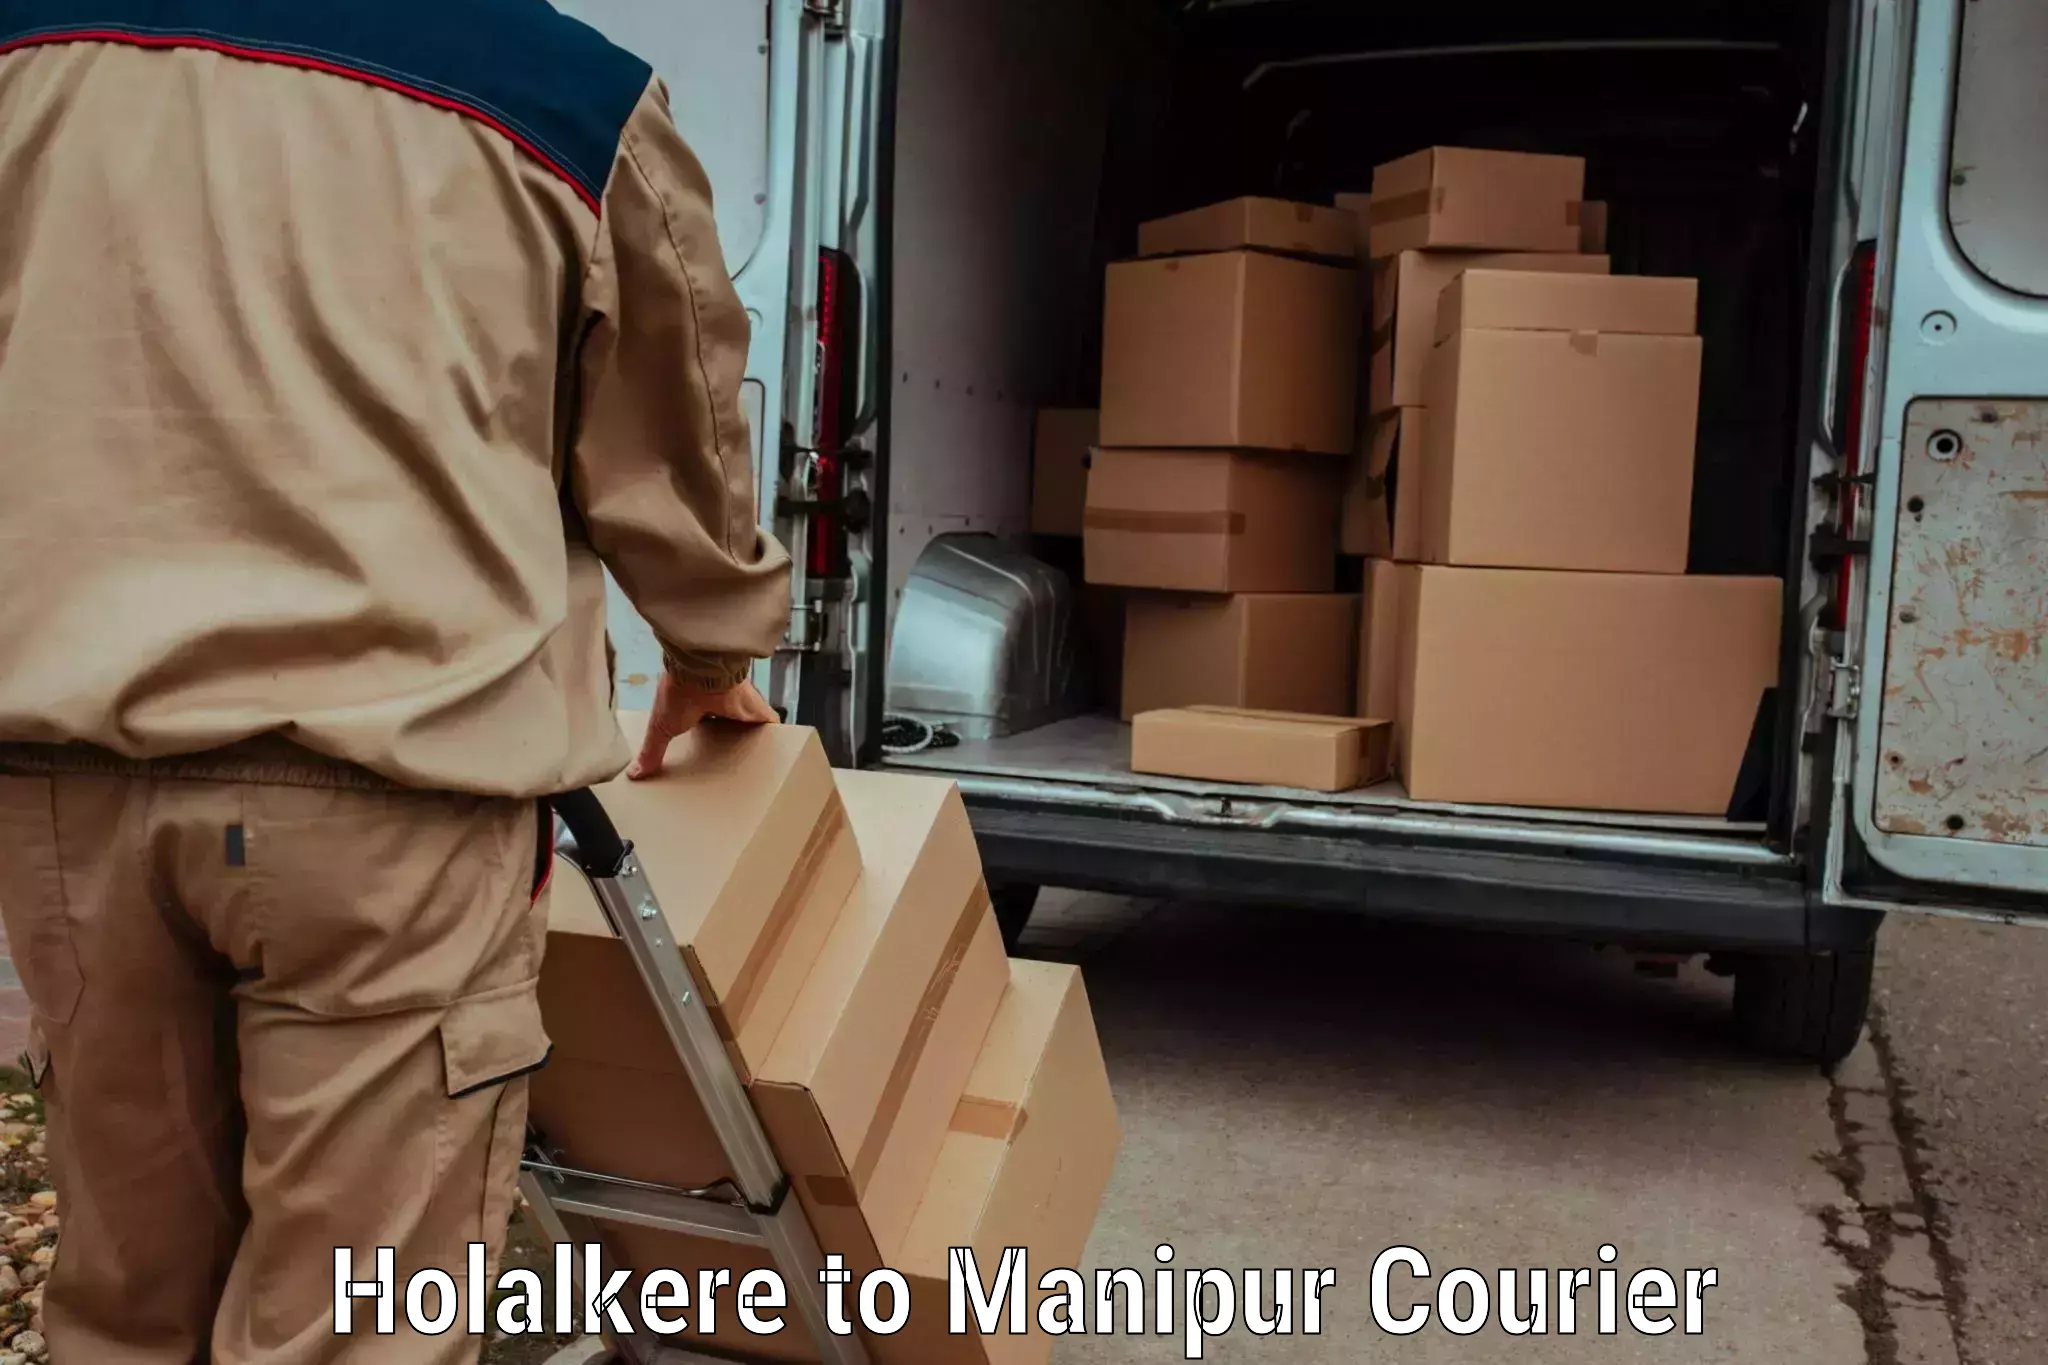 International parcel service Holalkere to Ukhrul